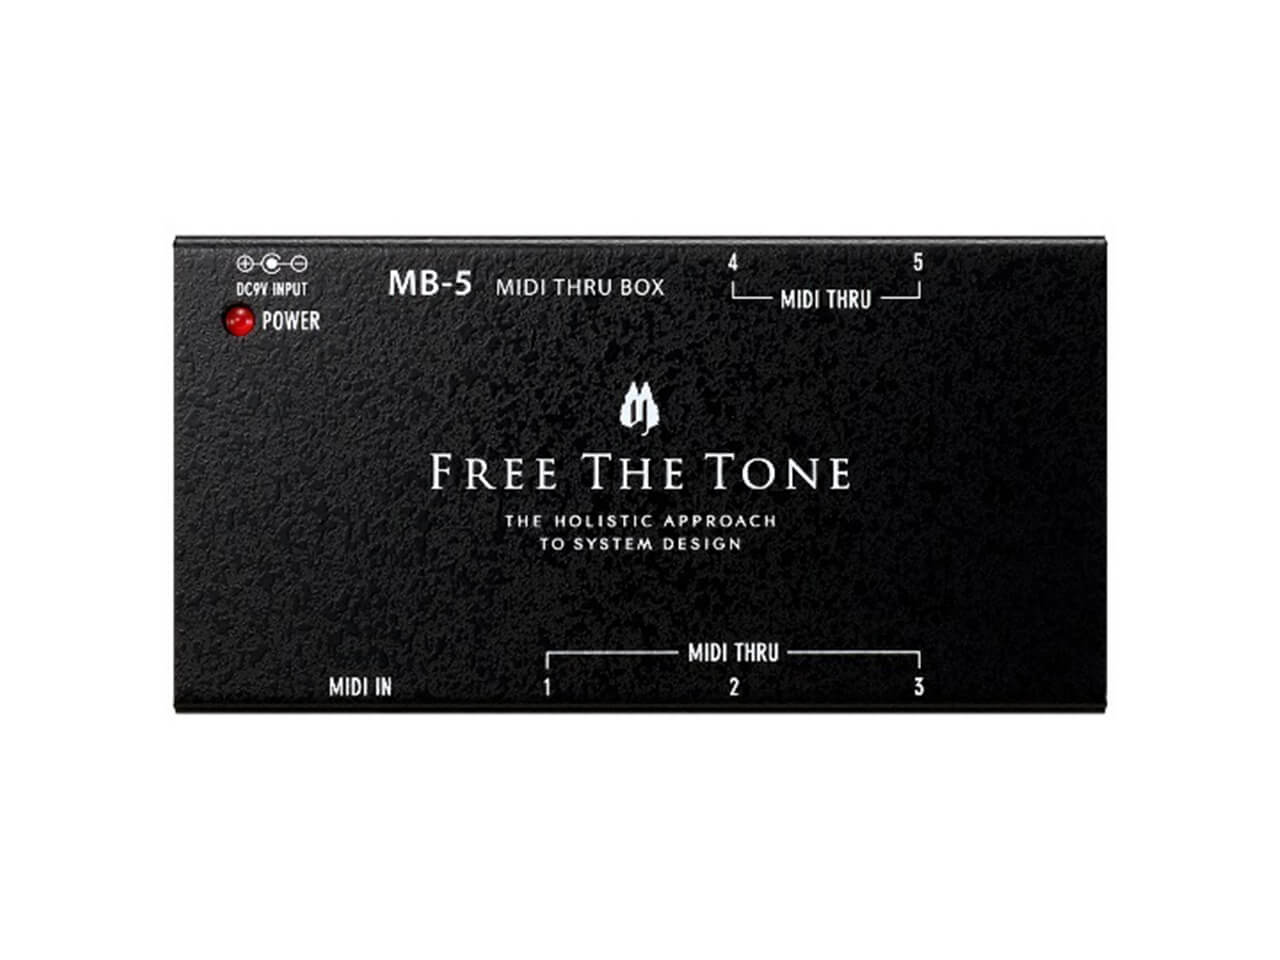 【お取寄せ商品】<br>Free The Tone MB-5 MIDI THRU BOX<br>(ジャンクションボックス)(フリーザトーン)